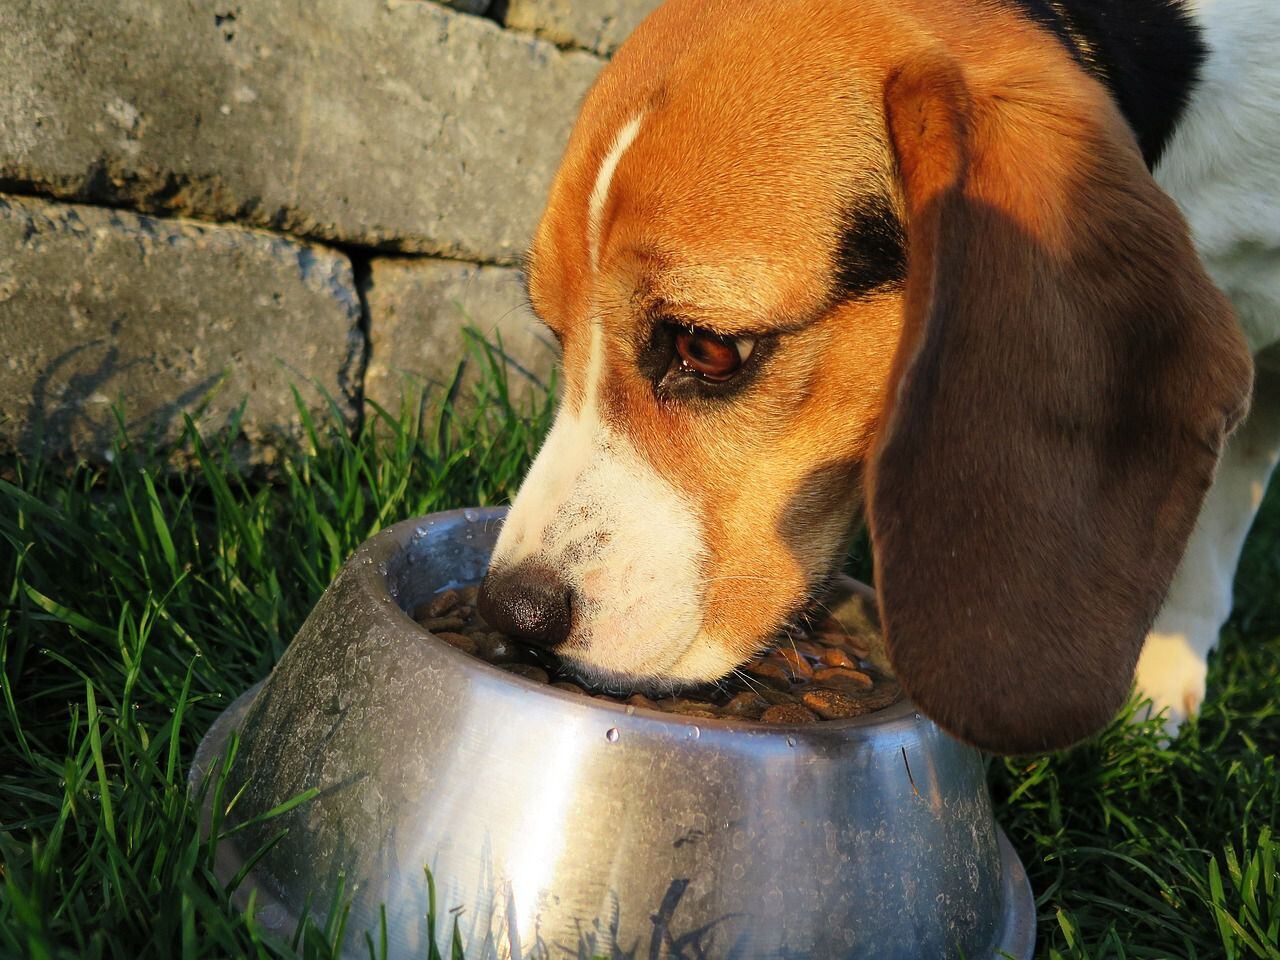 Entre las formas de mejorar la calidad de vida de estos perros se encuentran cambios en la dieta, alternativas al agua, cirugía y recomendaciones de que aumenten o pierdan peso (Pixabay)